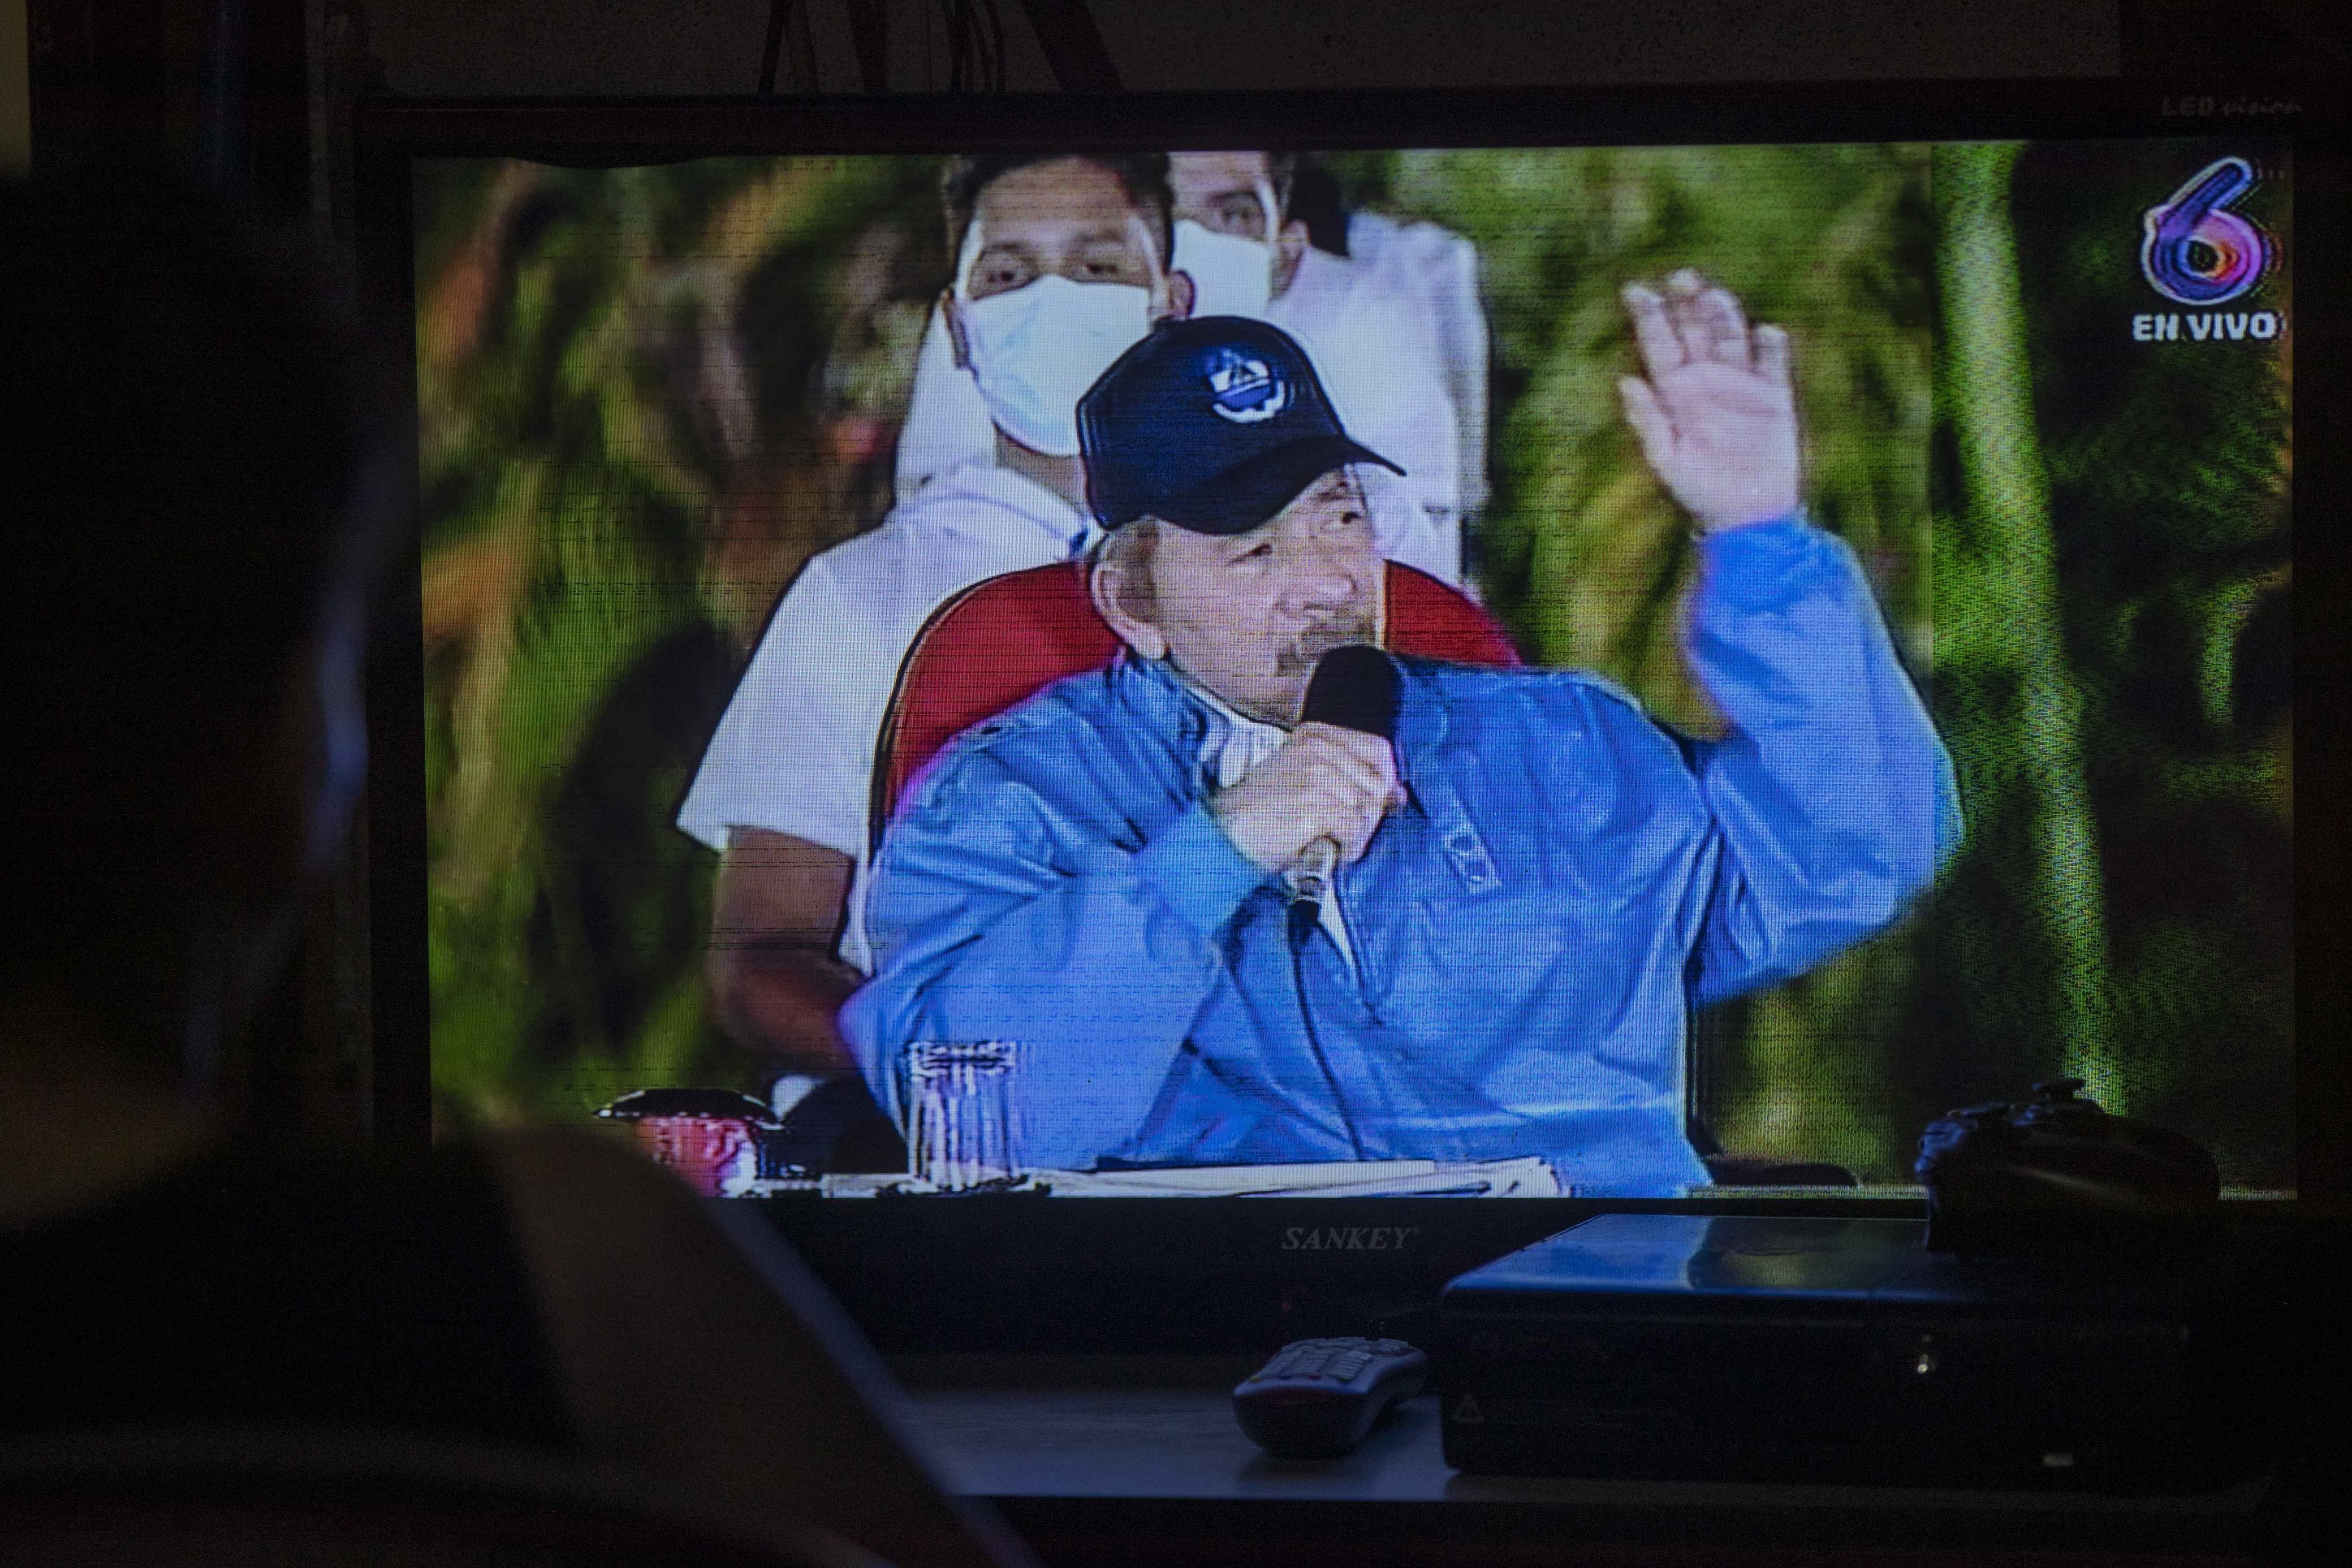  45 países instaron en una declaración conjunta poner fin a la represión en Nicaragua, y llamaron al régimen de Daniel Ortega a liberar a los presos políticos en su país (EFE/Jorge Torres)
